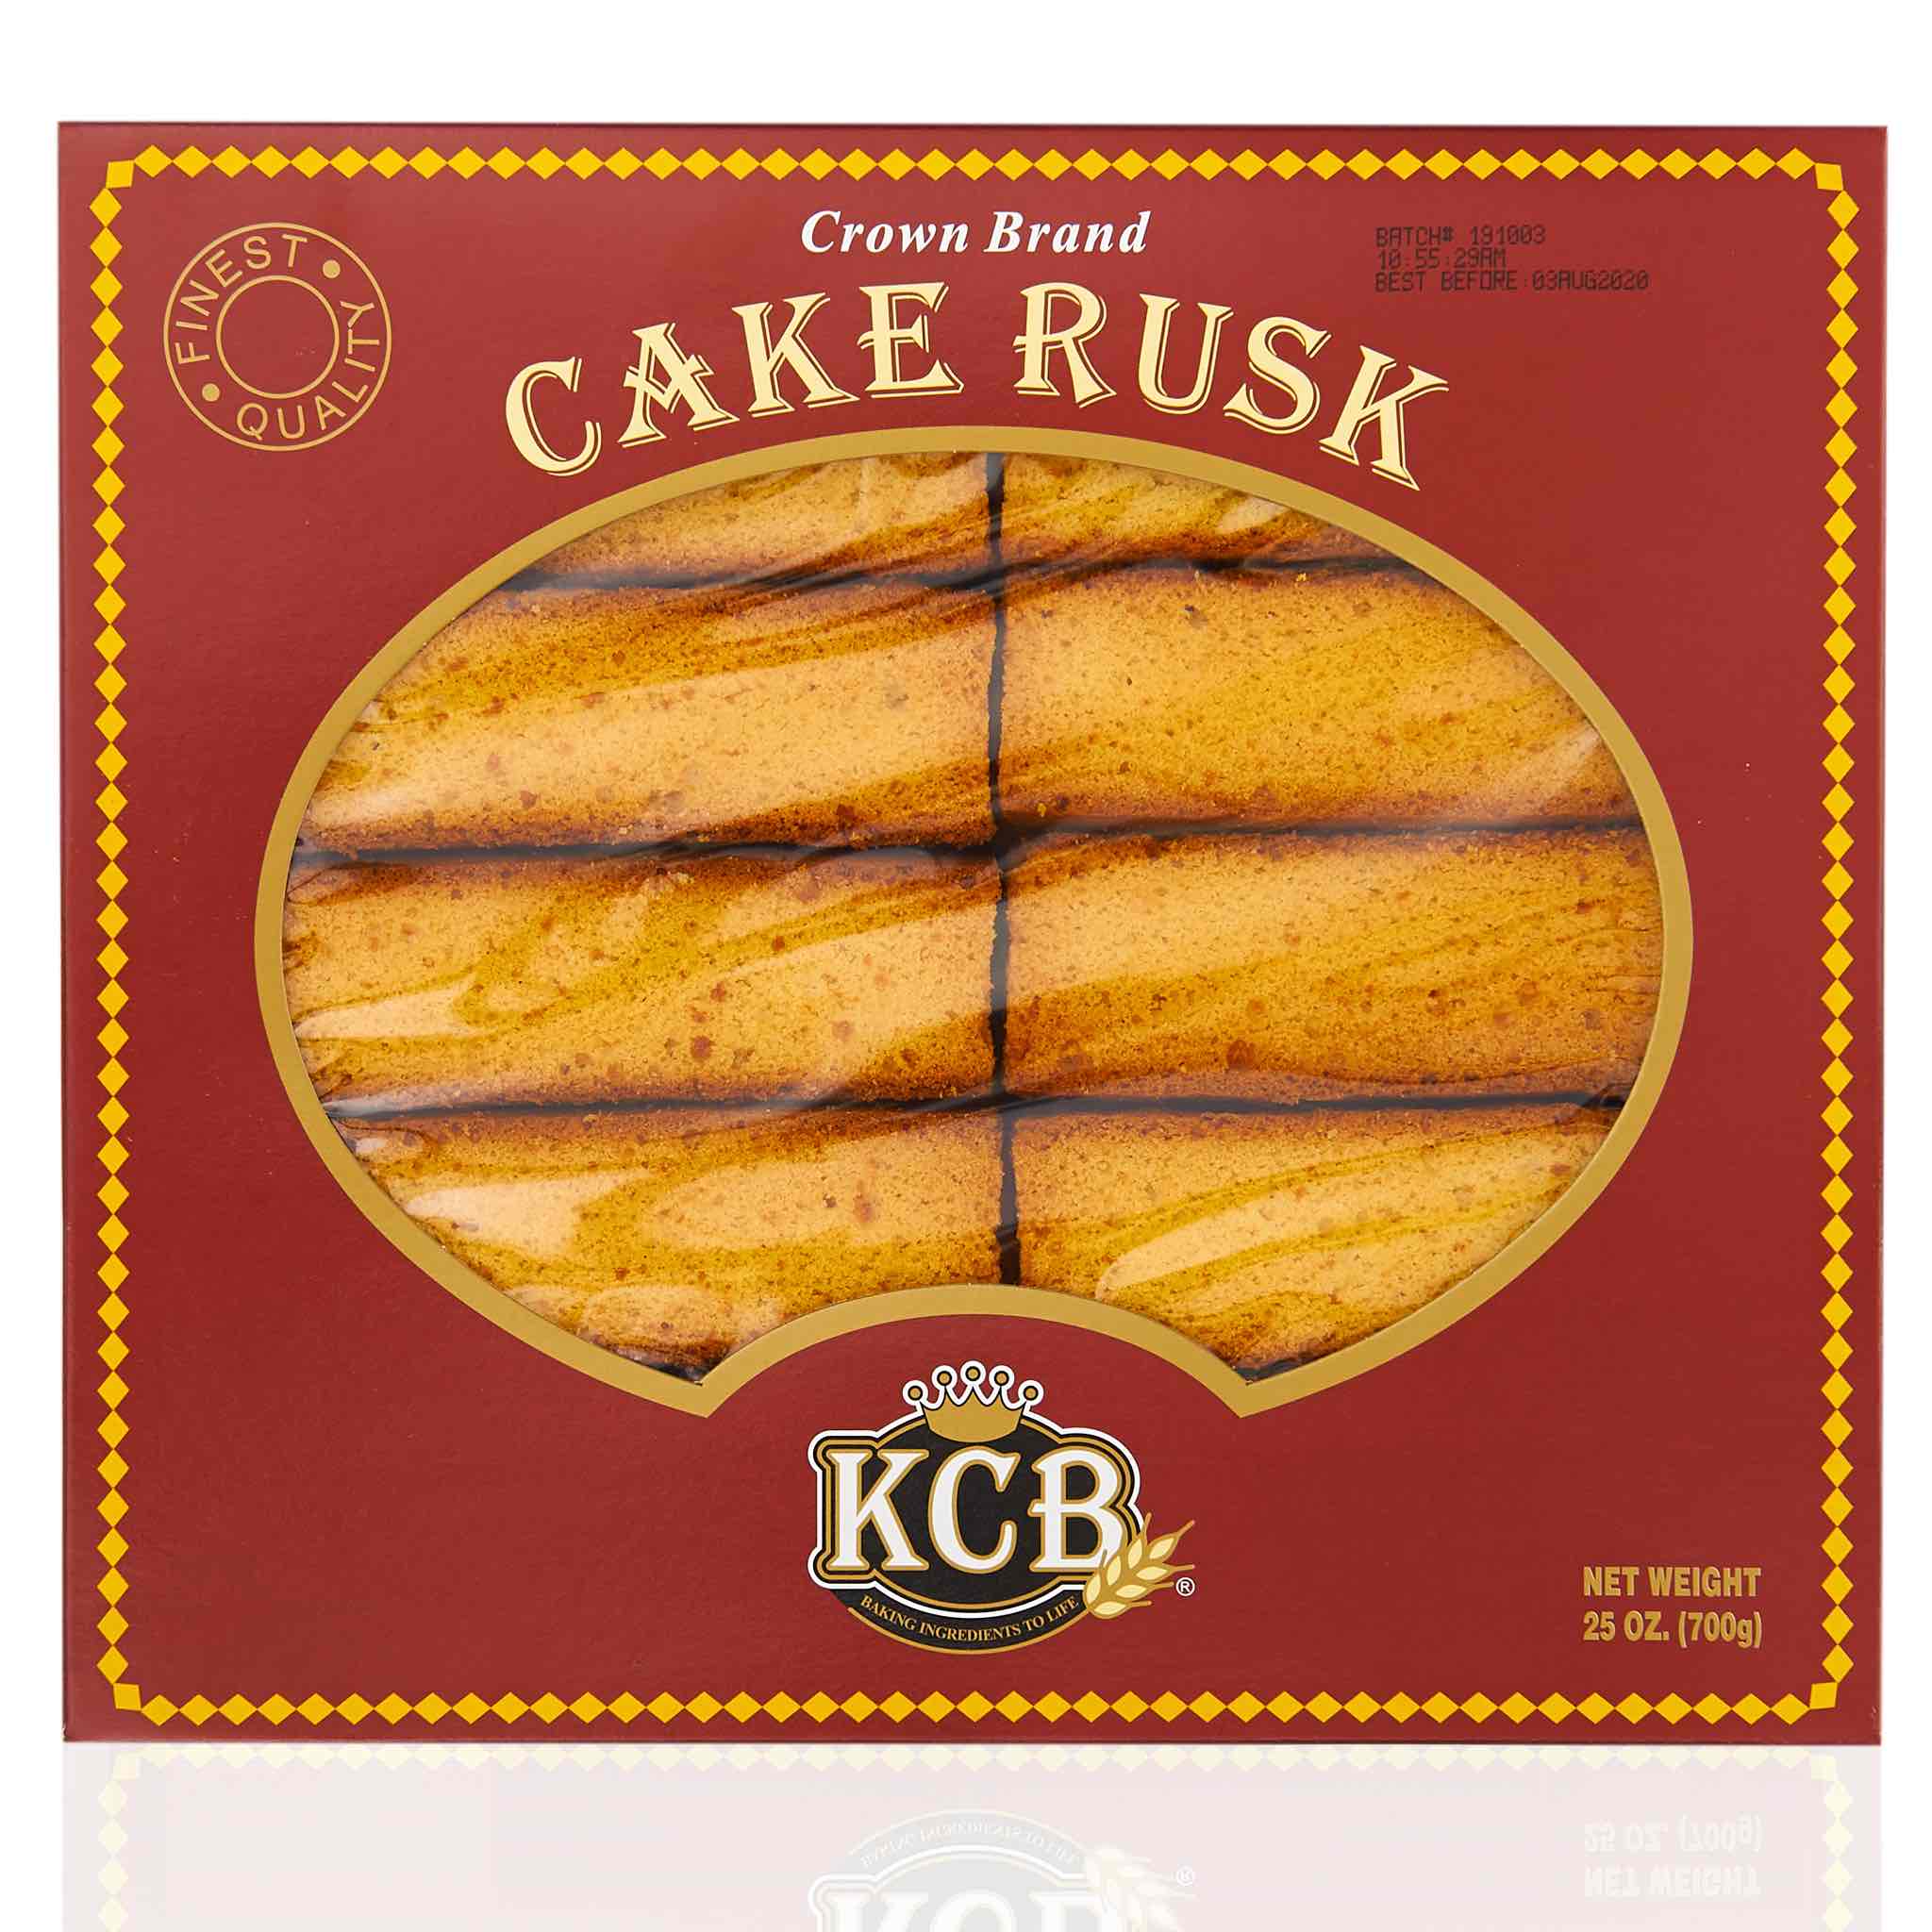 How to make cake rusk | Cake rusk recipe